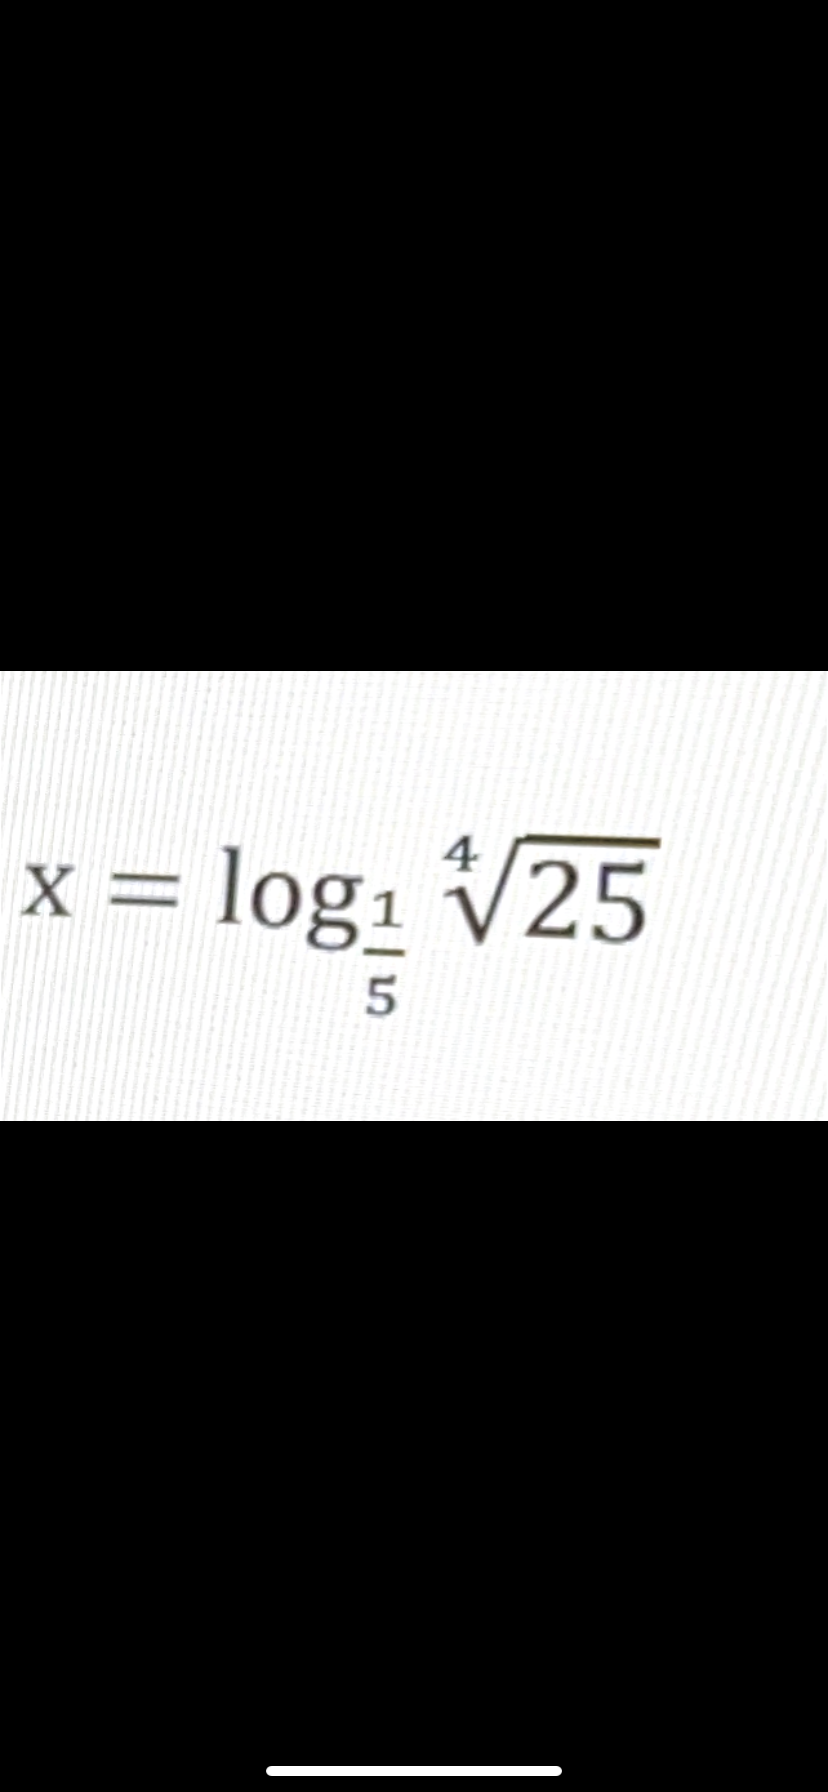 4
x = log₁
log₁ √25
5